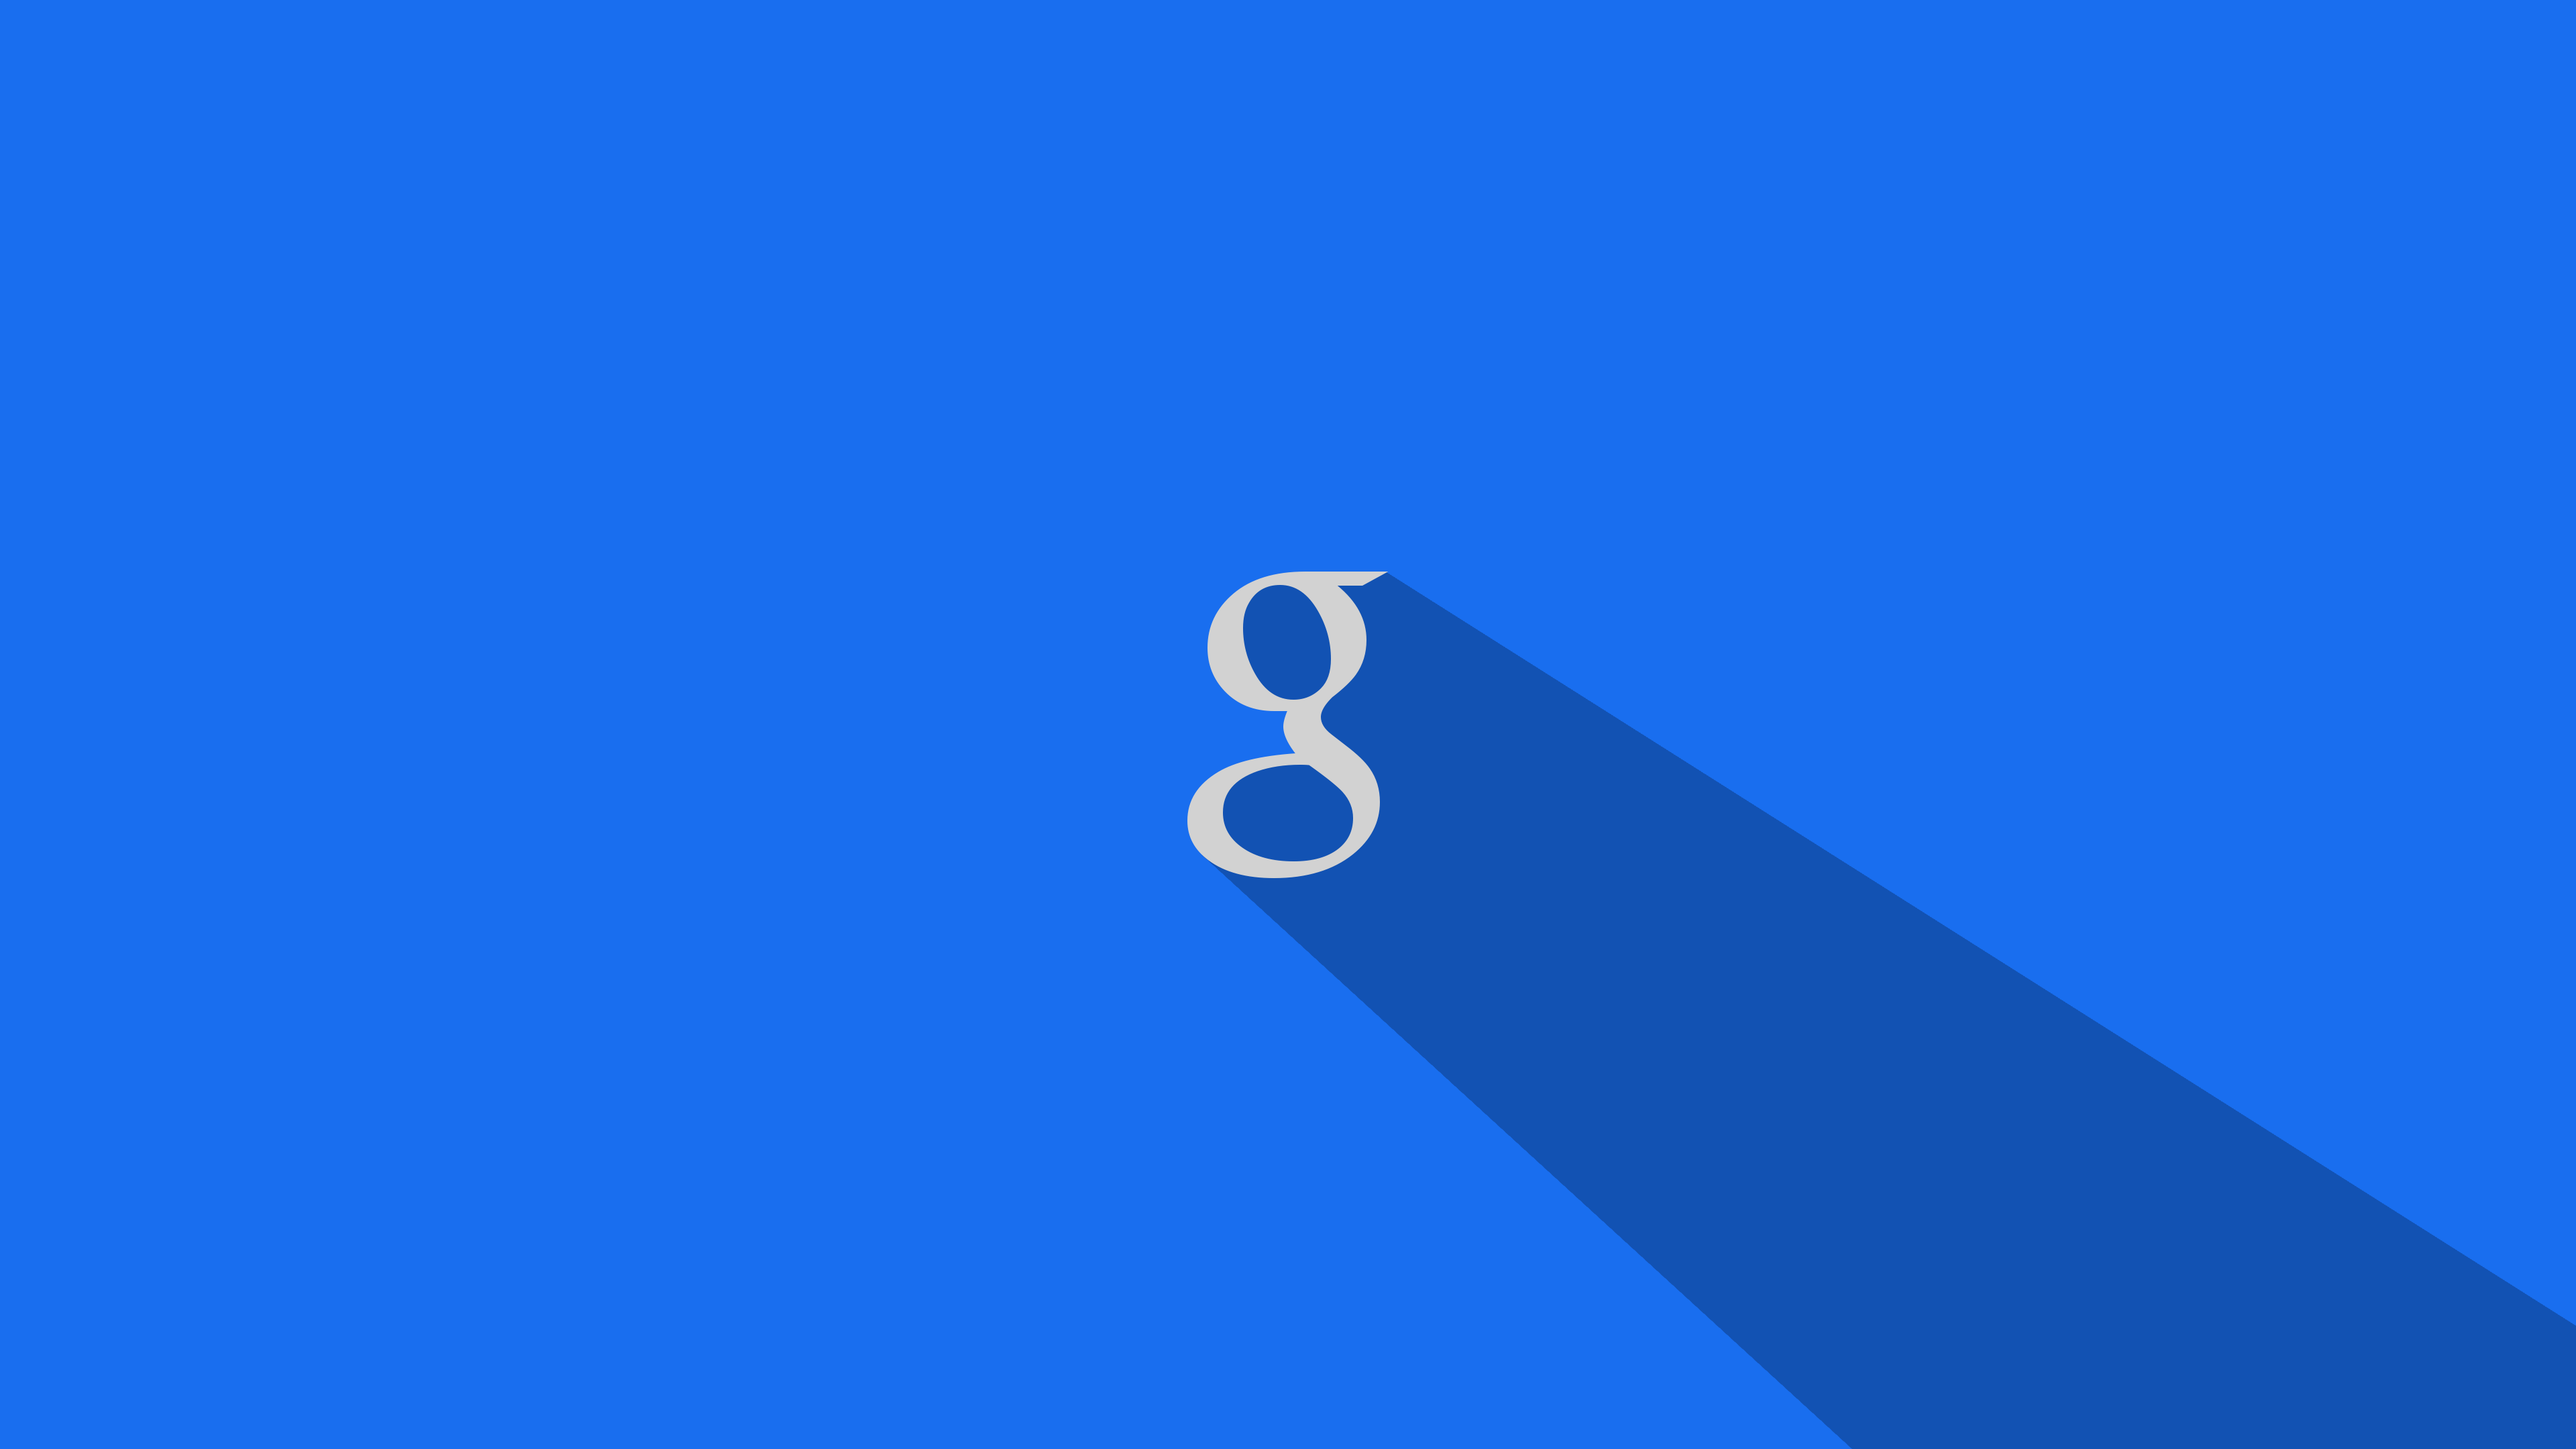 fond d'écran google pour pc,bleu,bleu cobalt,jour,bleu électrique,texte